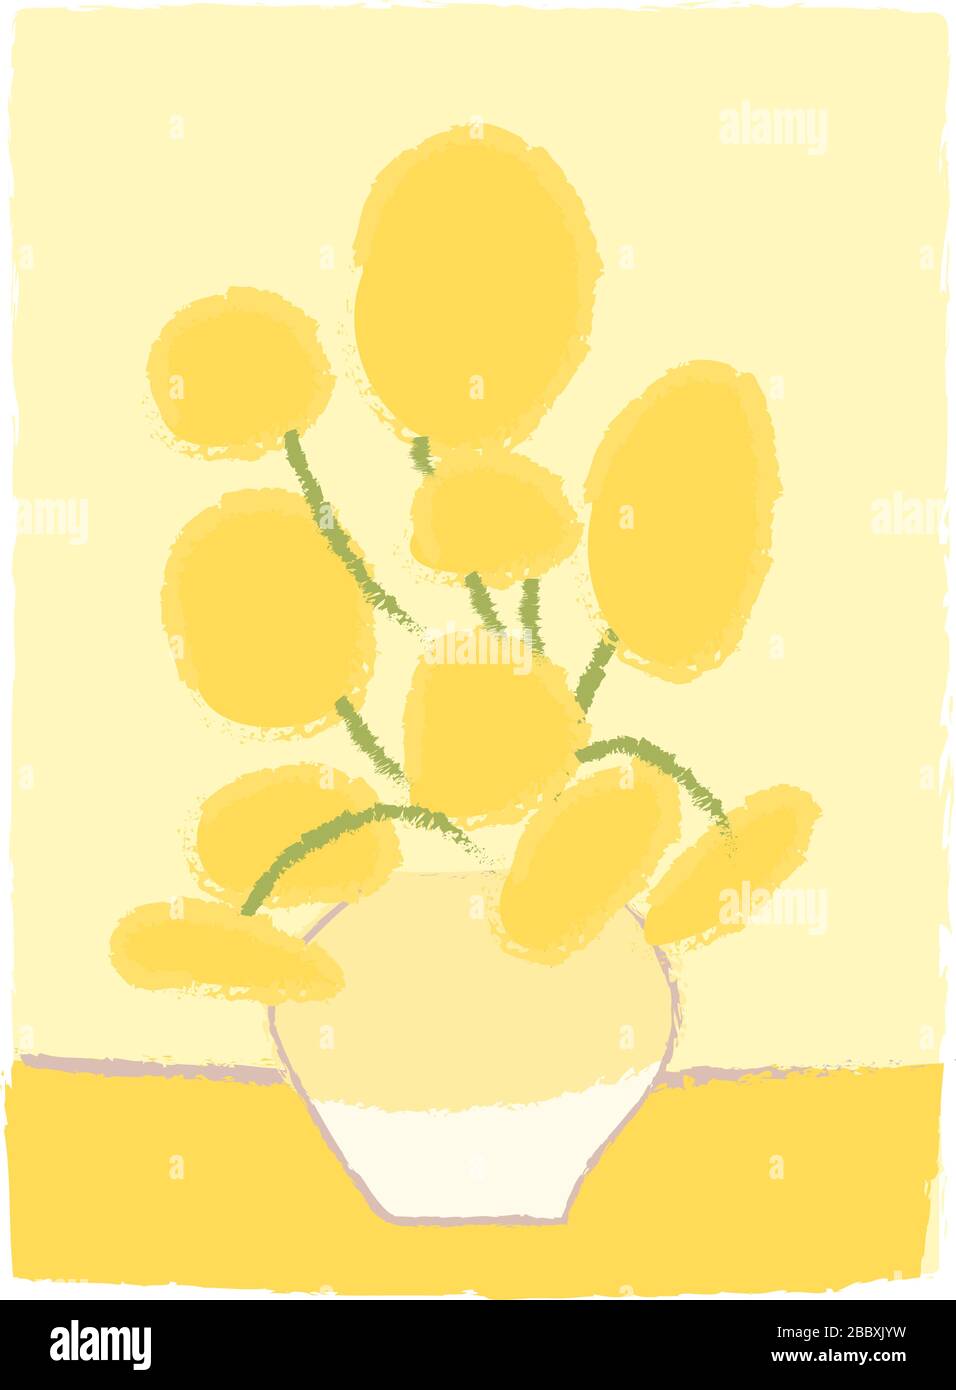 Girasoli imitazione di Van Gogh come disegno del bambino in stile cartone animato. Impressionismo pittura. Fiori gialli in vaso. Bouquet decorazione biglietto d'auguri. Semplice disegno vettoriale stilizzato isolato. Illustrazione Vettoriale